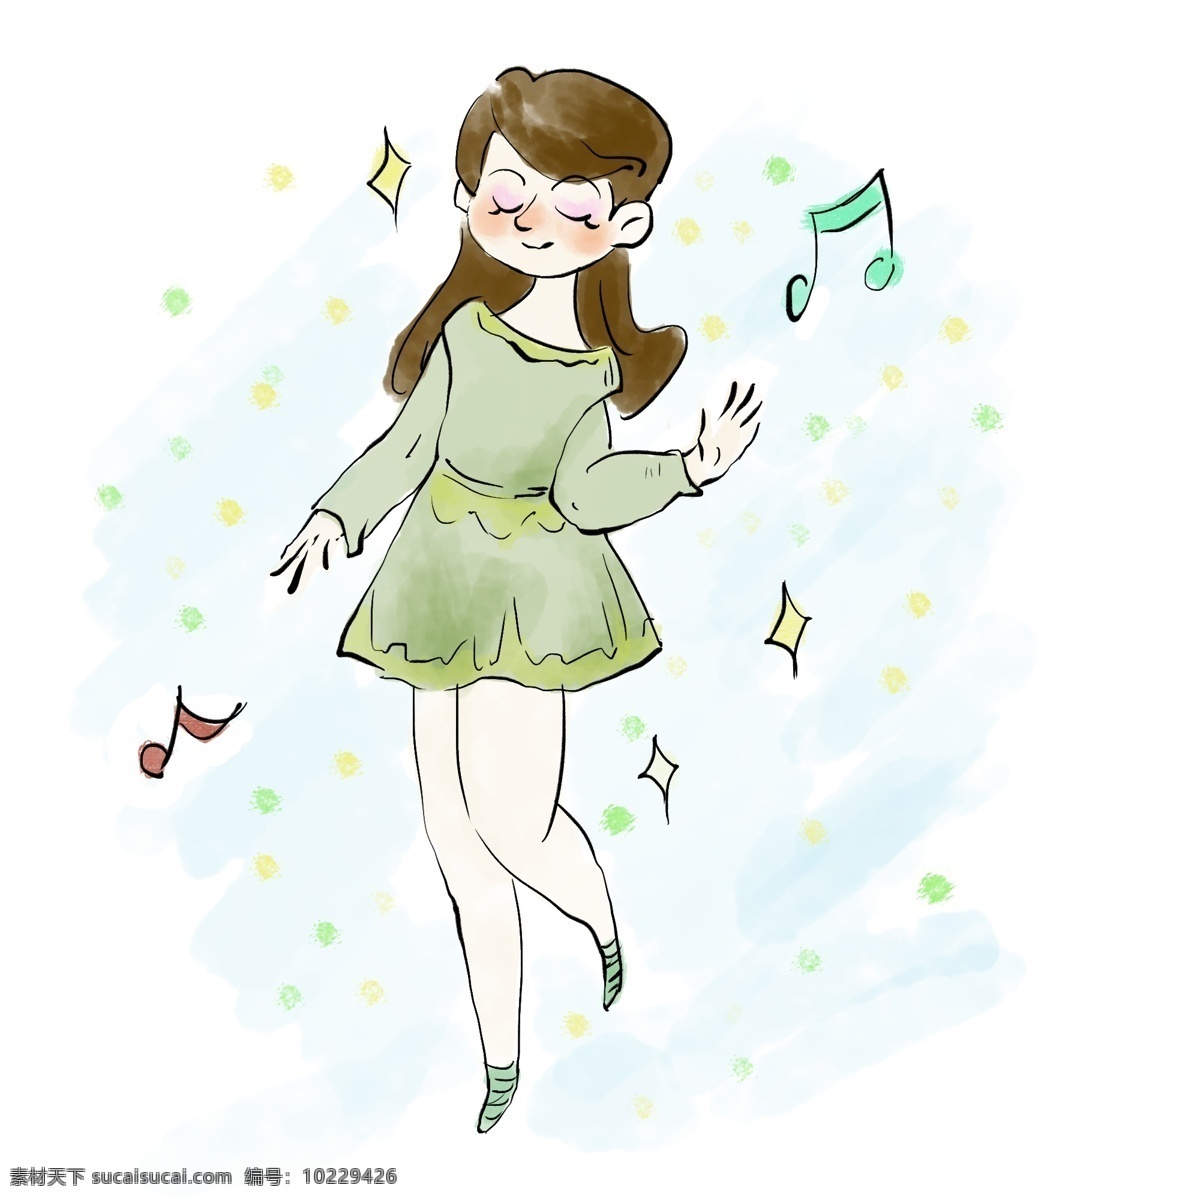 快乐 小女孩 音乐 长头发 绿裙子 音符 卡通人物 简笔画